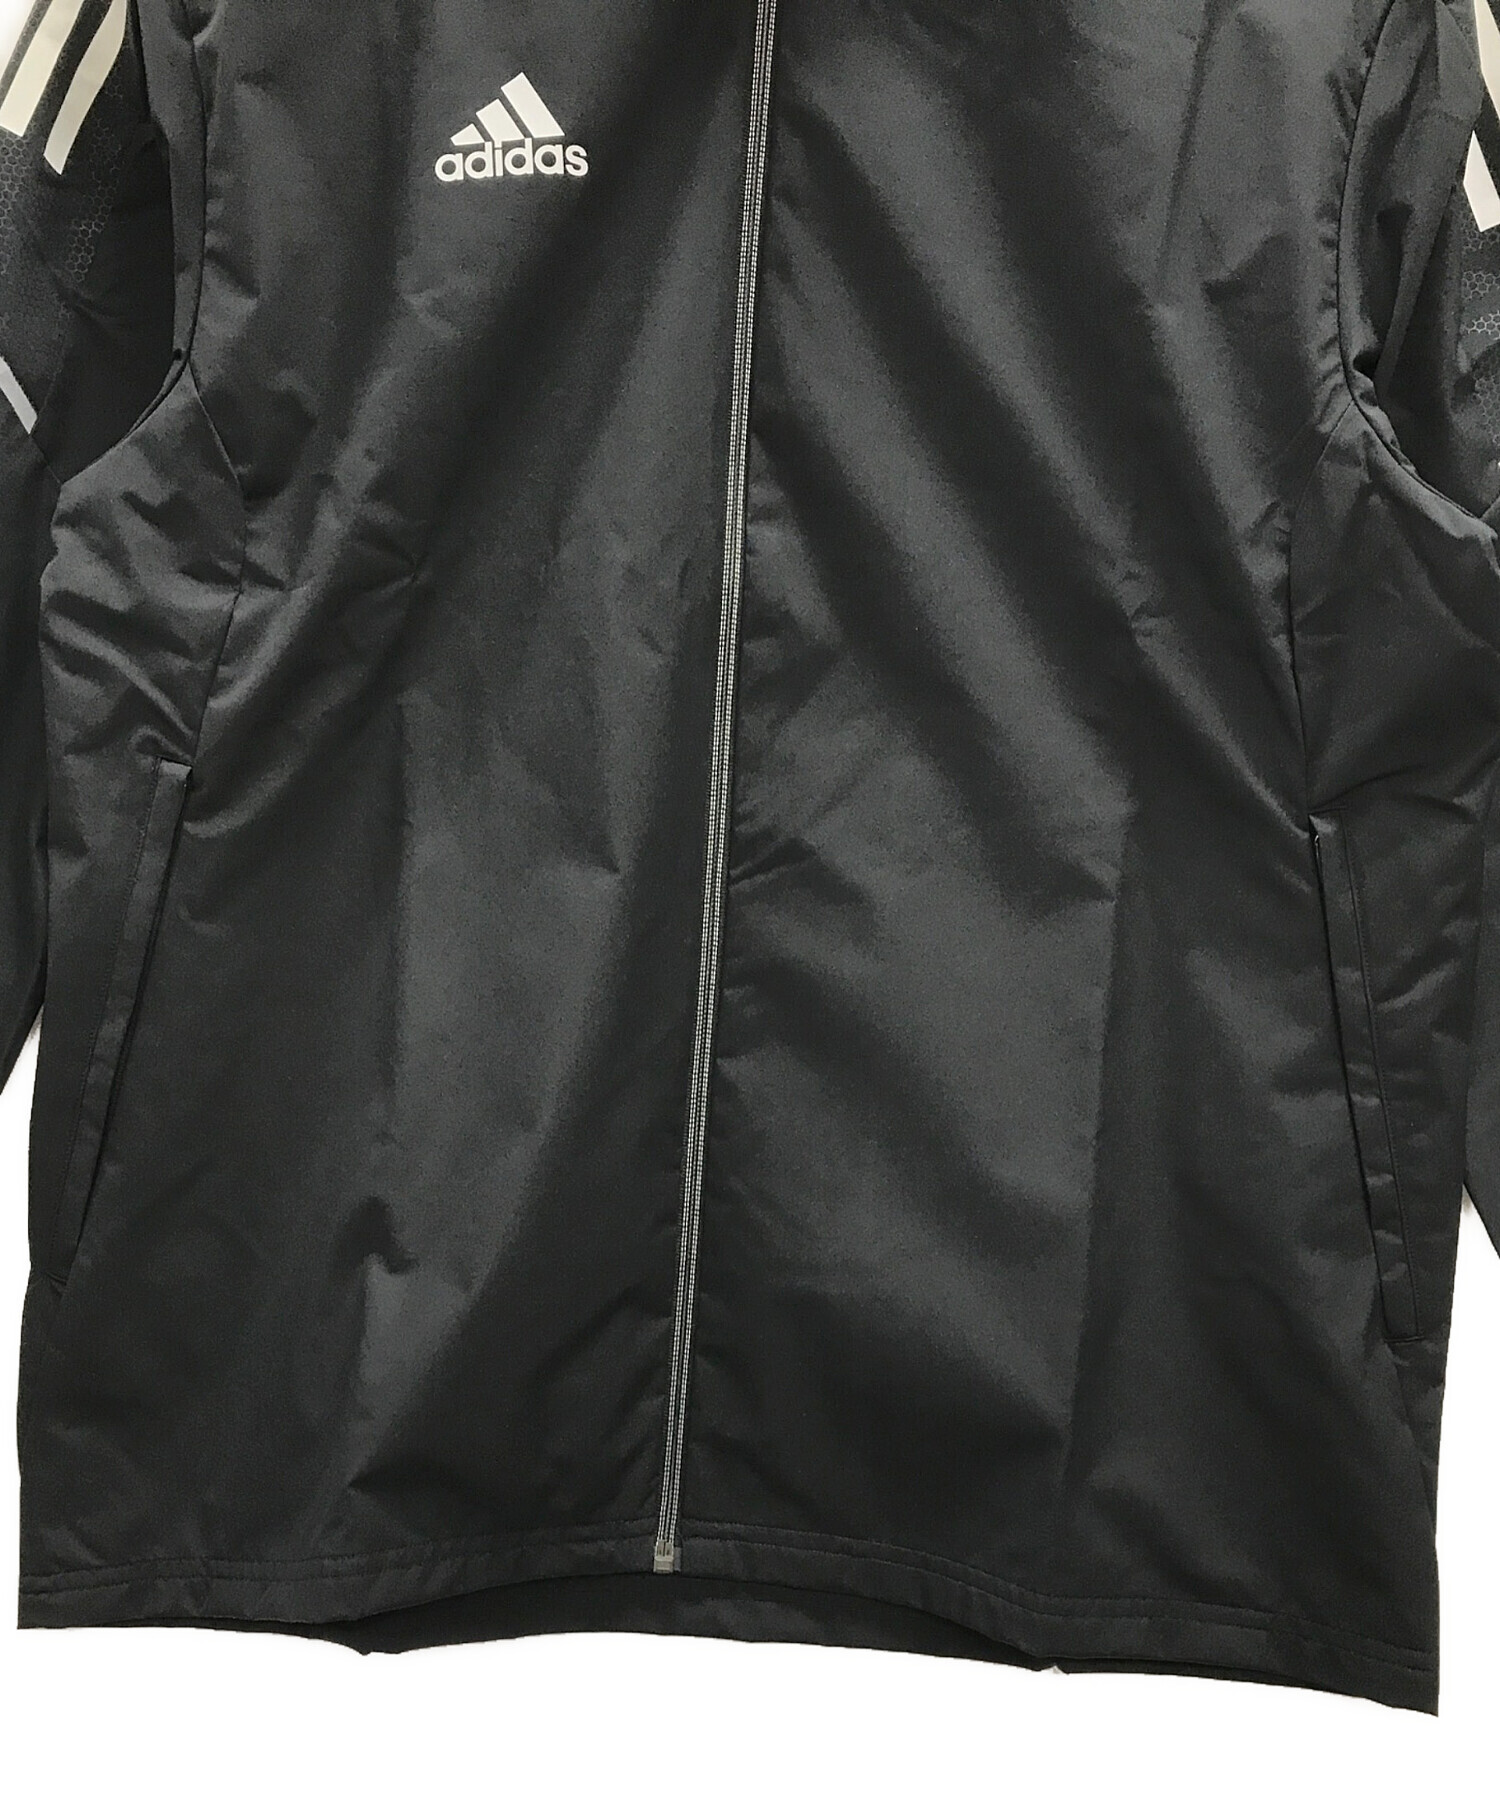 adidas (アディダス) トレーニングウェア オールウェザージャケット ブラック サイズ:L